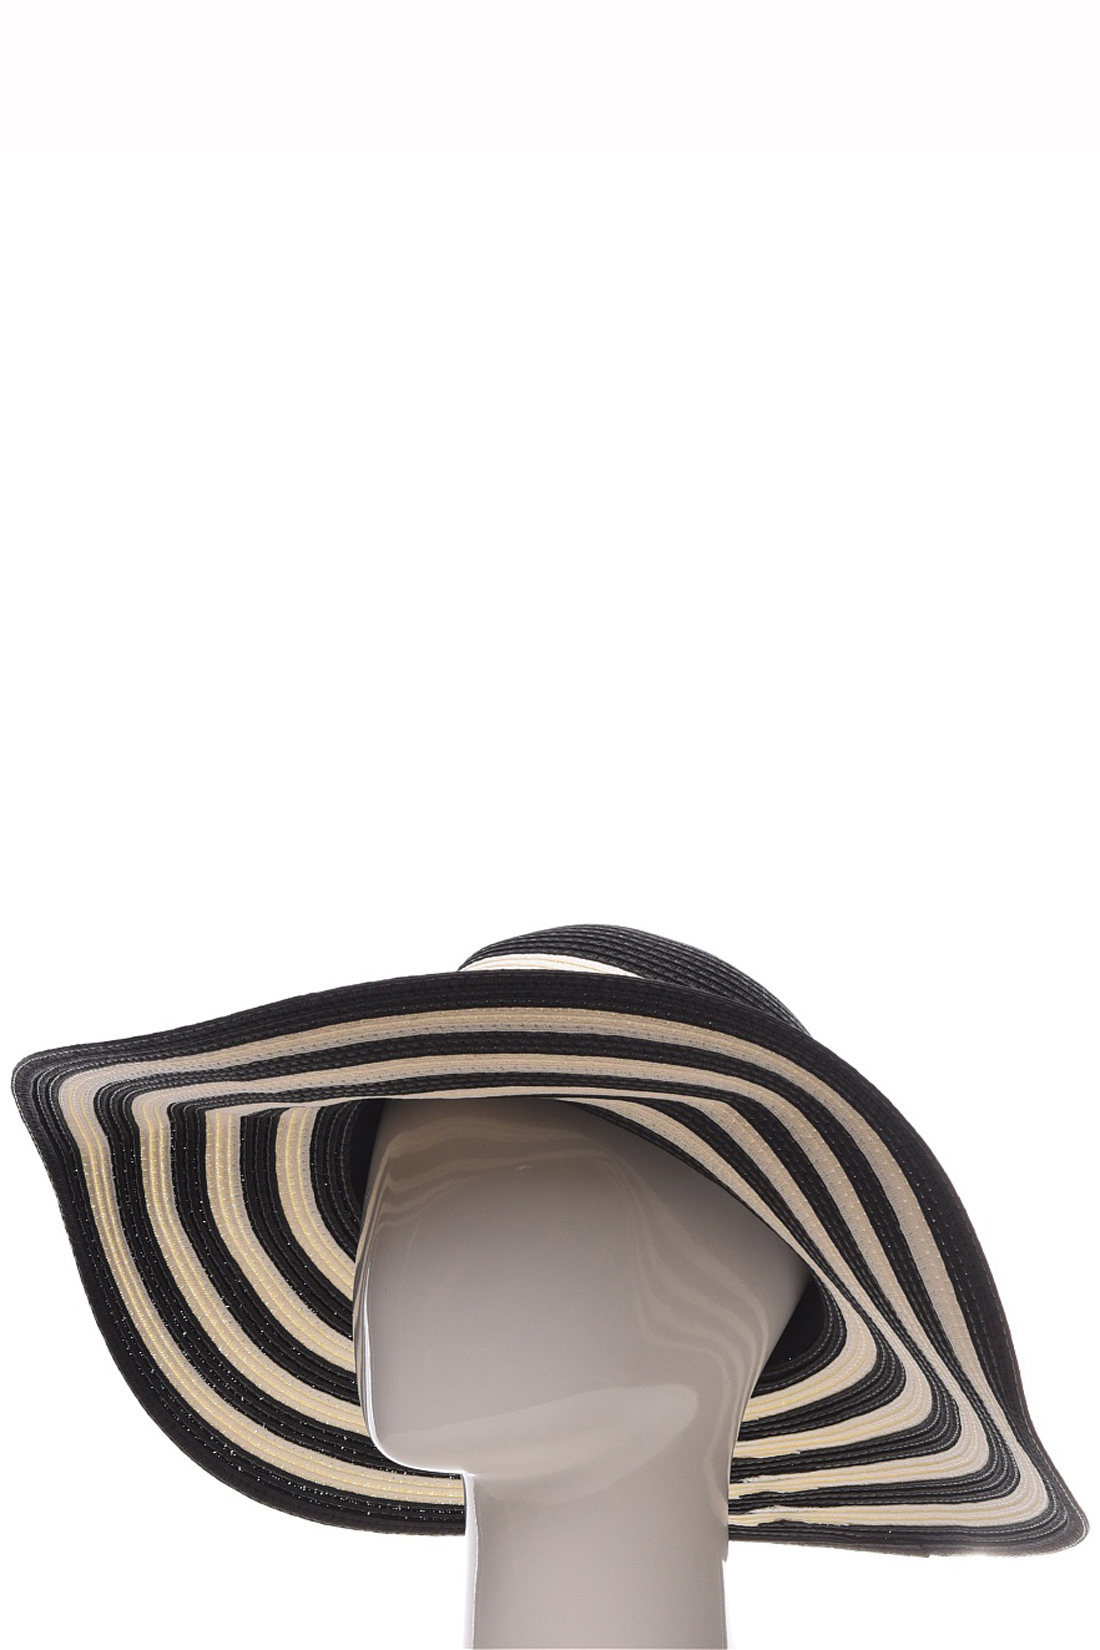 Шляпа с чёрно-белыми полосками (арт. baon B349001), размер Б/р 56, цвет черный